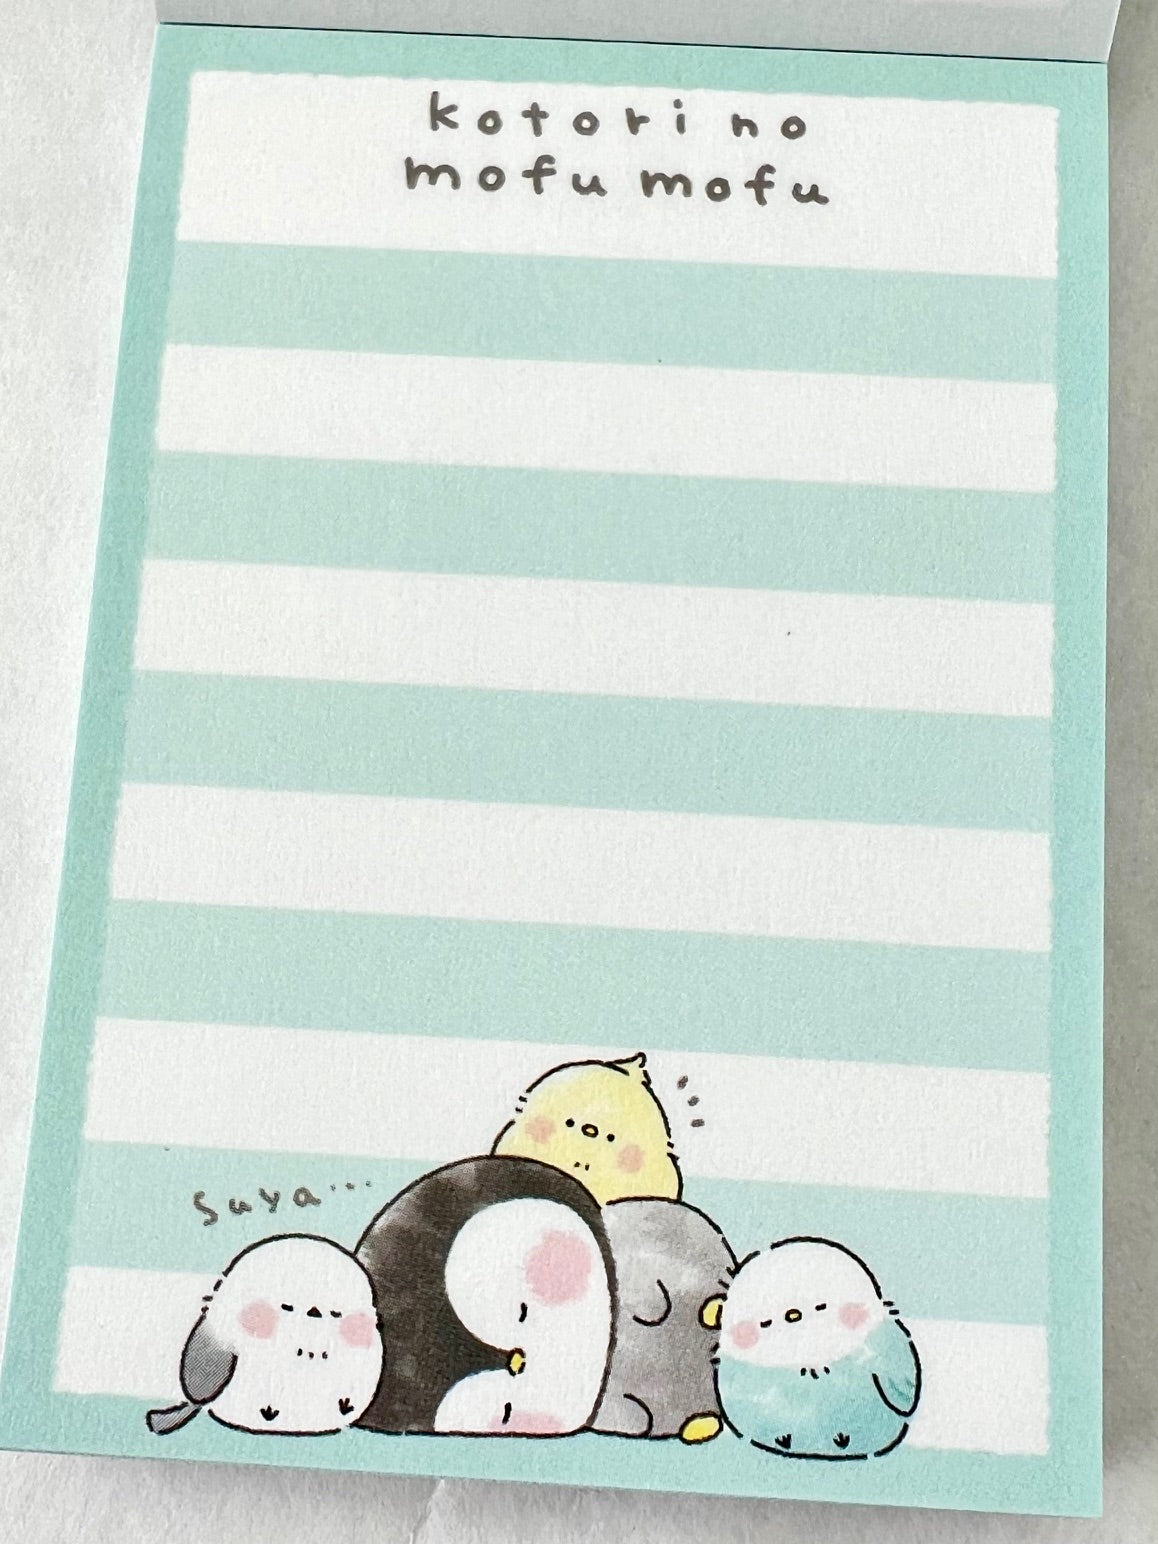 212233 Birds kotori no mufu mofu Mini Notepad-10